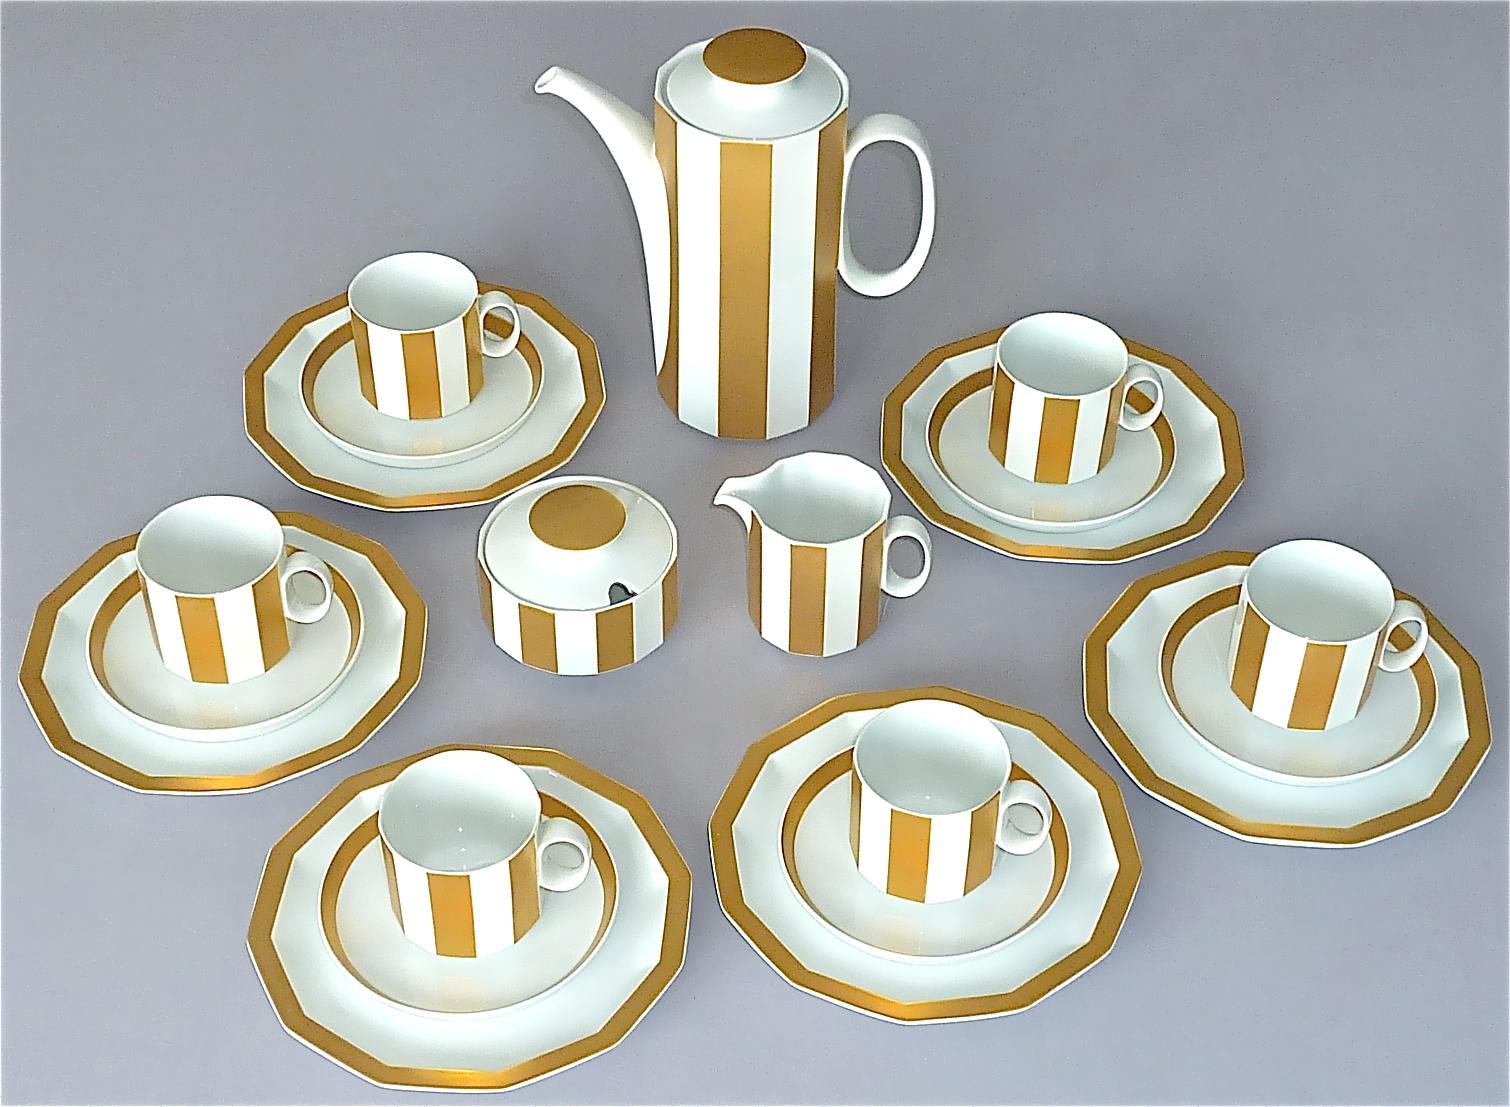 Feines und exquisites Tapio Wirkkala für Rosenthal Studio-Linie vergoldetes weißes Porzellan Kaffeeservice für 6 Personen, Deutschland um 1960er bis 1970er Jahre. Dieses Set gehört zu den Kabinettstücken, die so selten benutzt werden, dass es in